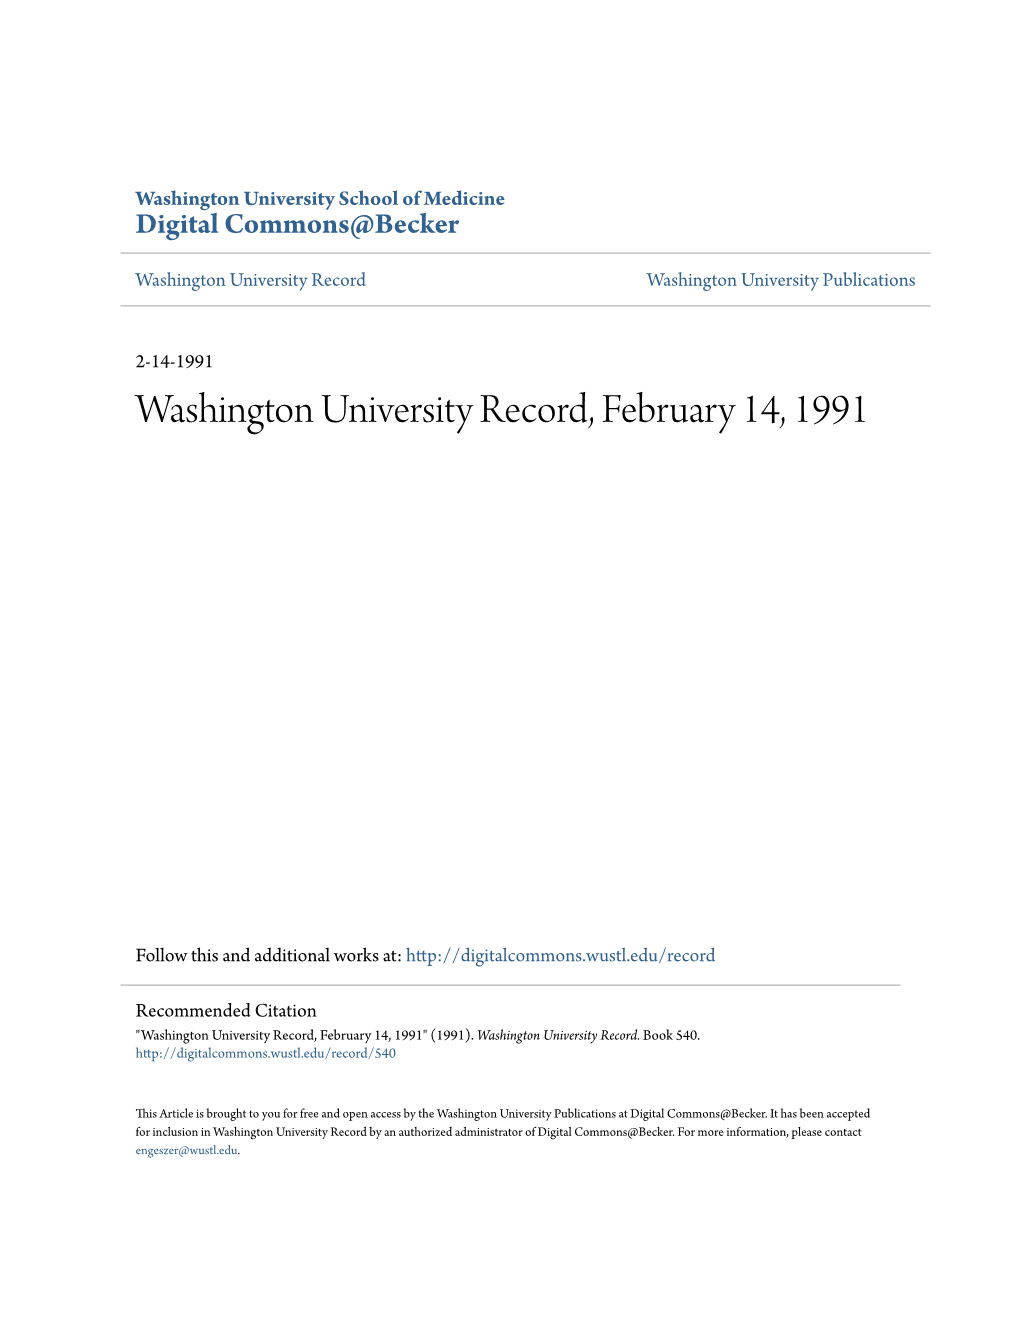 Washington University Record, February 14, 1991